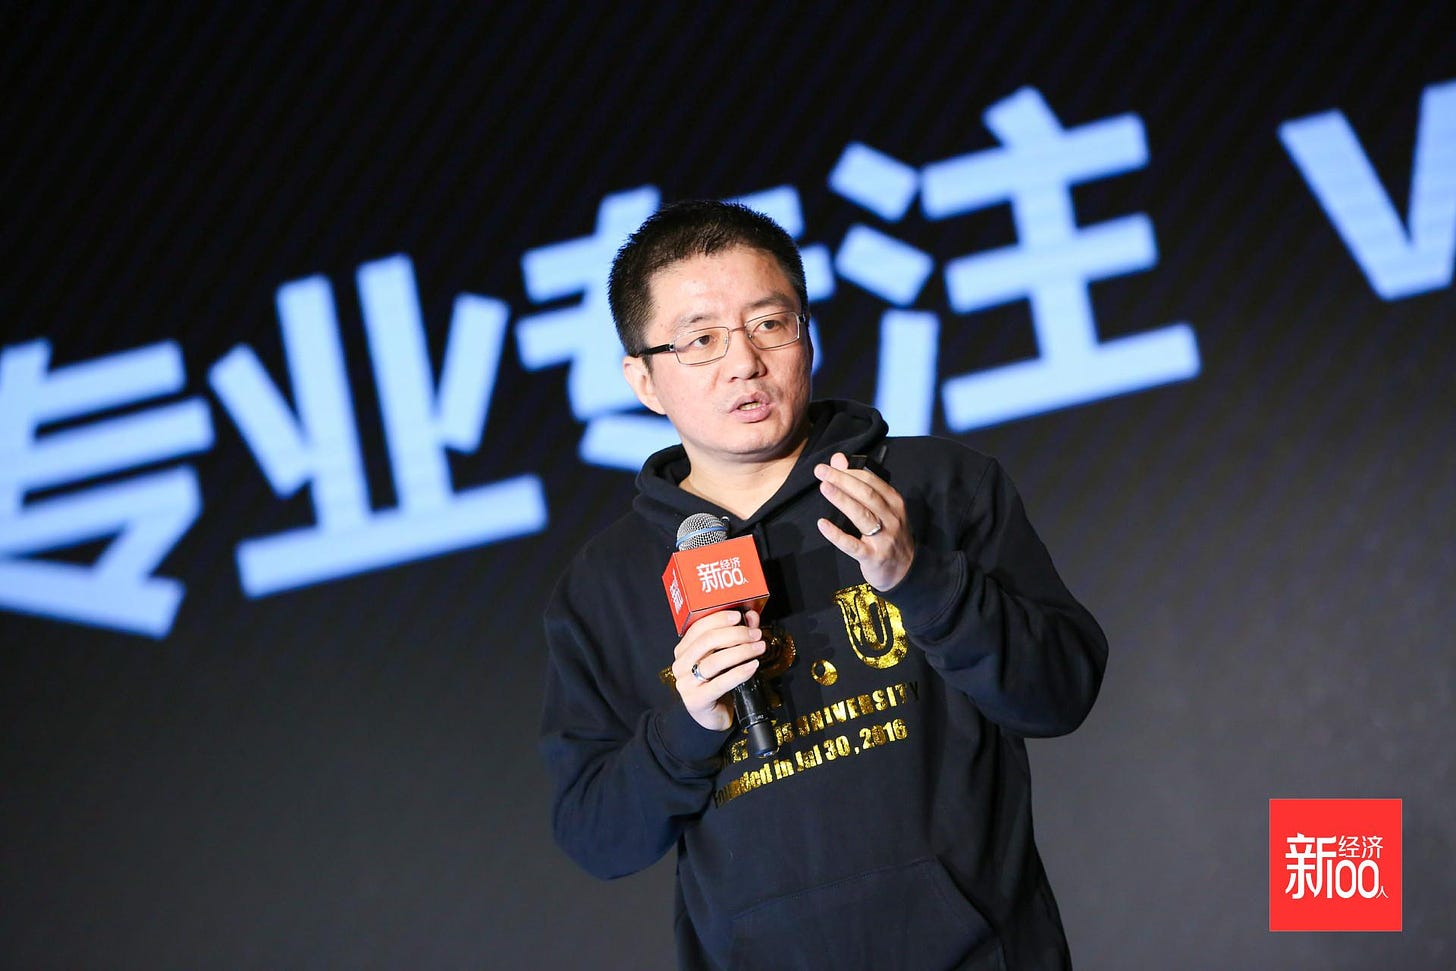 Wang Huiwen (co-founder of Meituan)